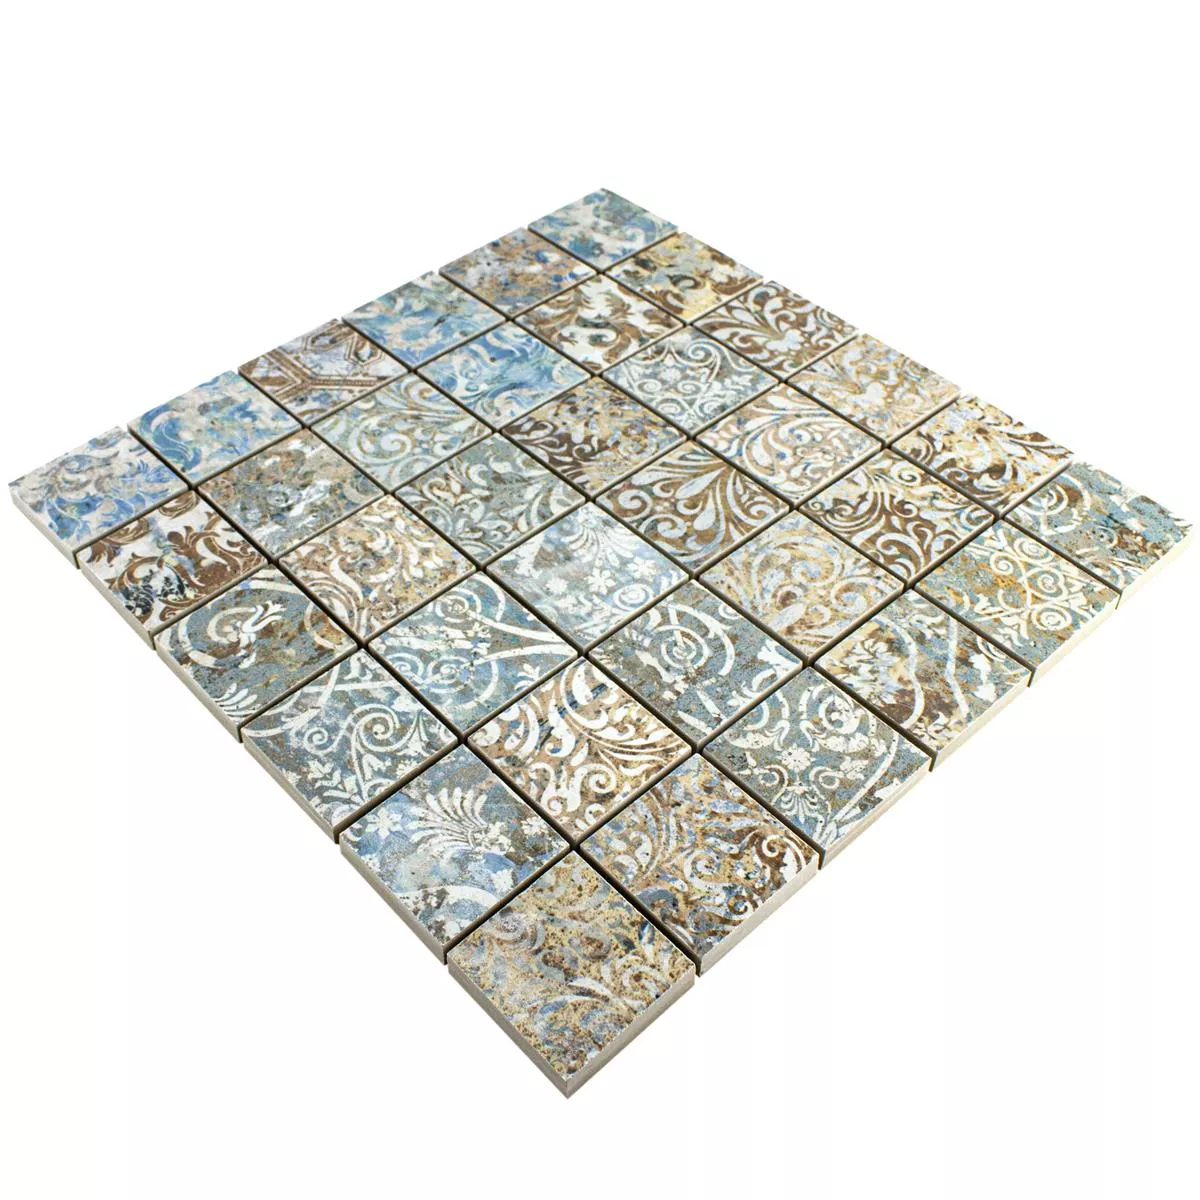 Ceramica Mosaico Piastrelle Patchwork Colorato 47x47mm